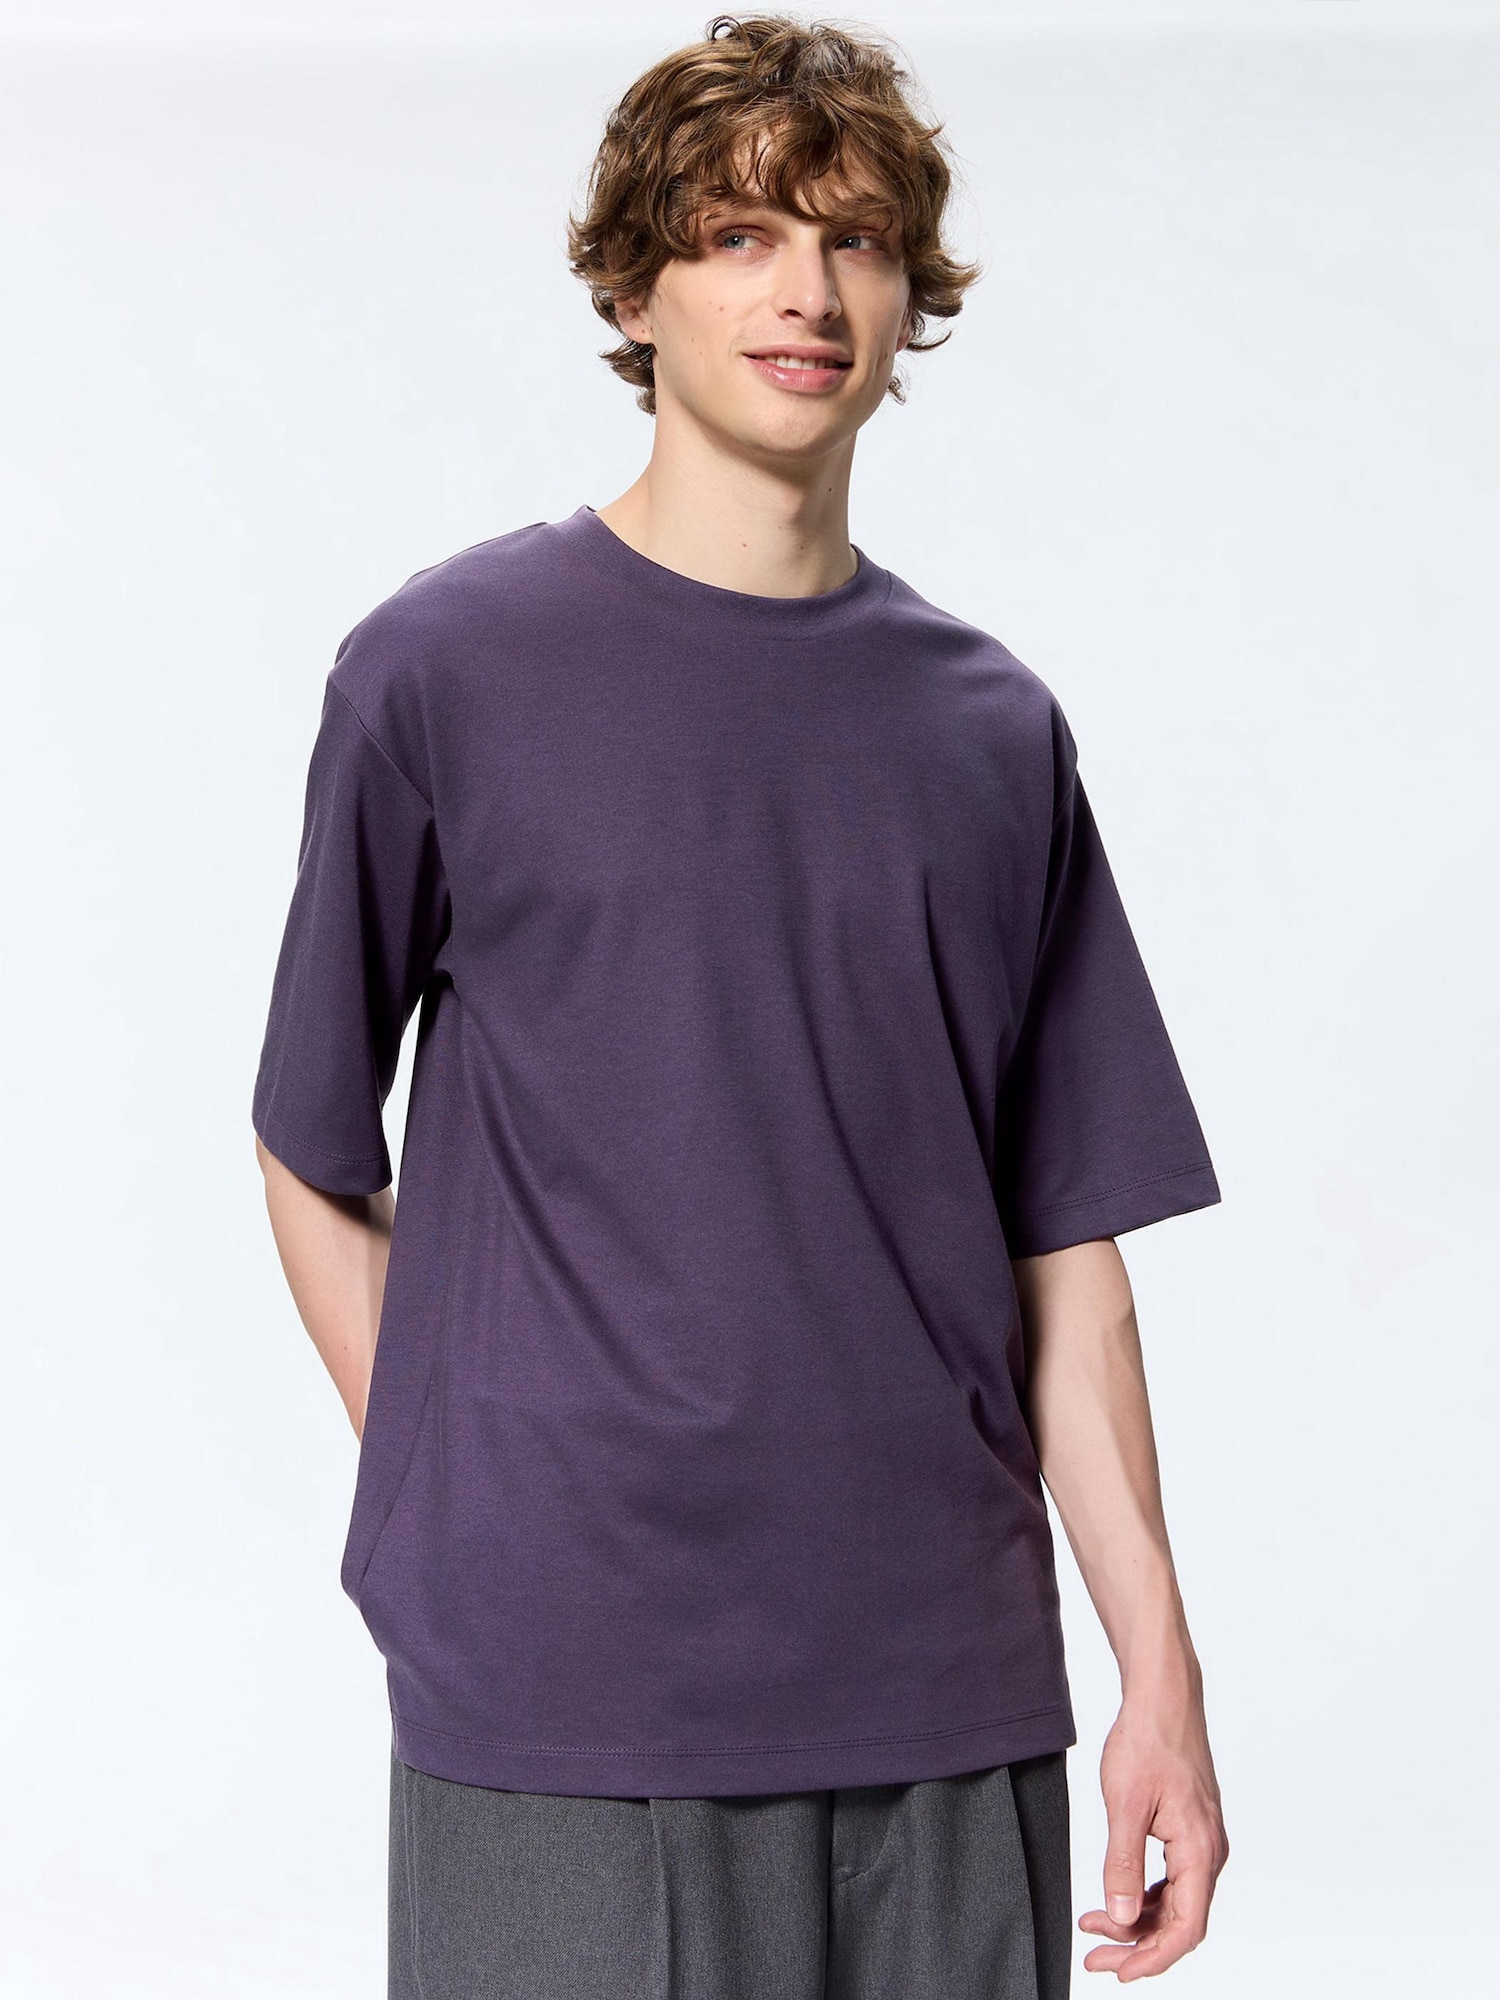 V2011：BISH × GU リンリン 半袖Tシャツ 半袖カットソー 紫 L バンドTシャツ:35